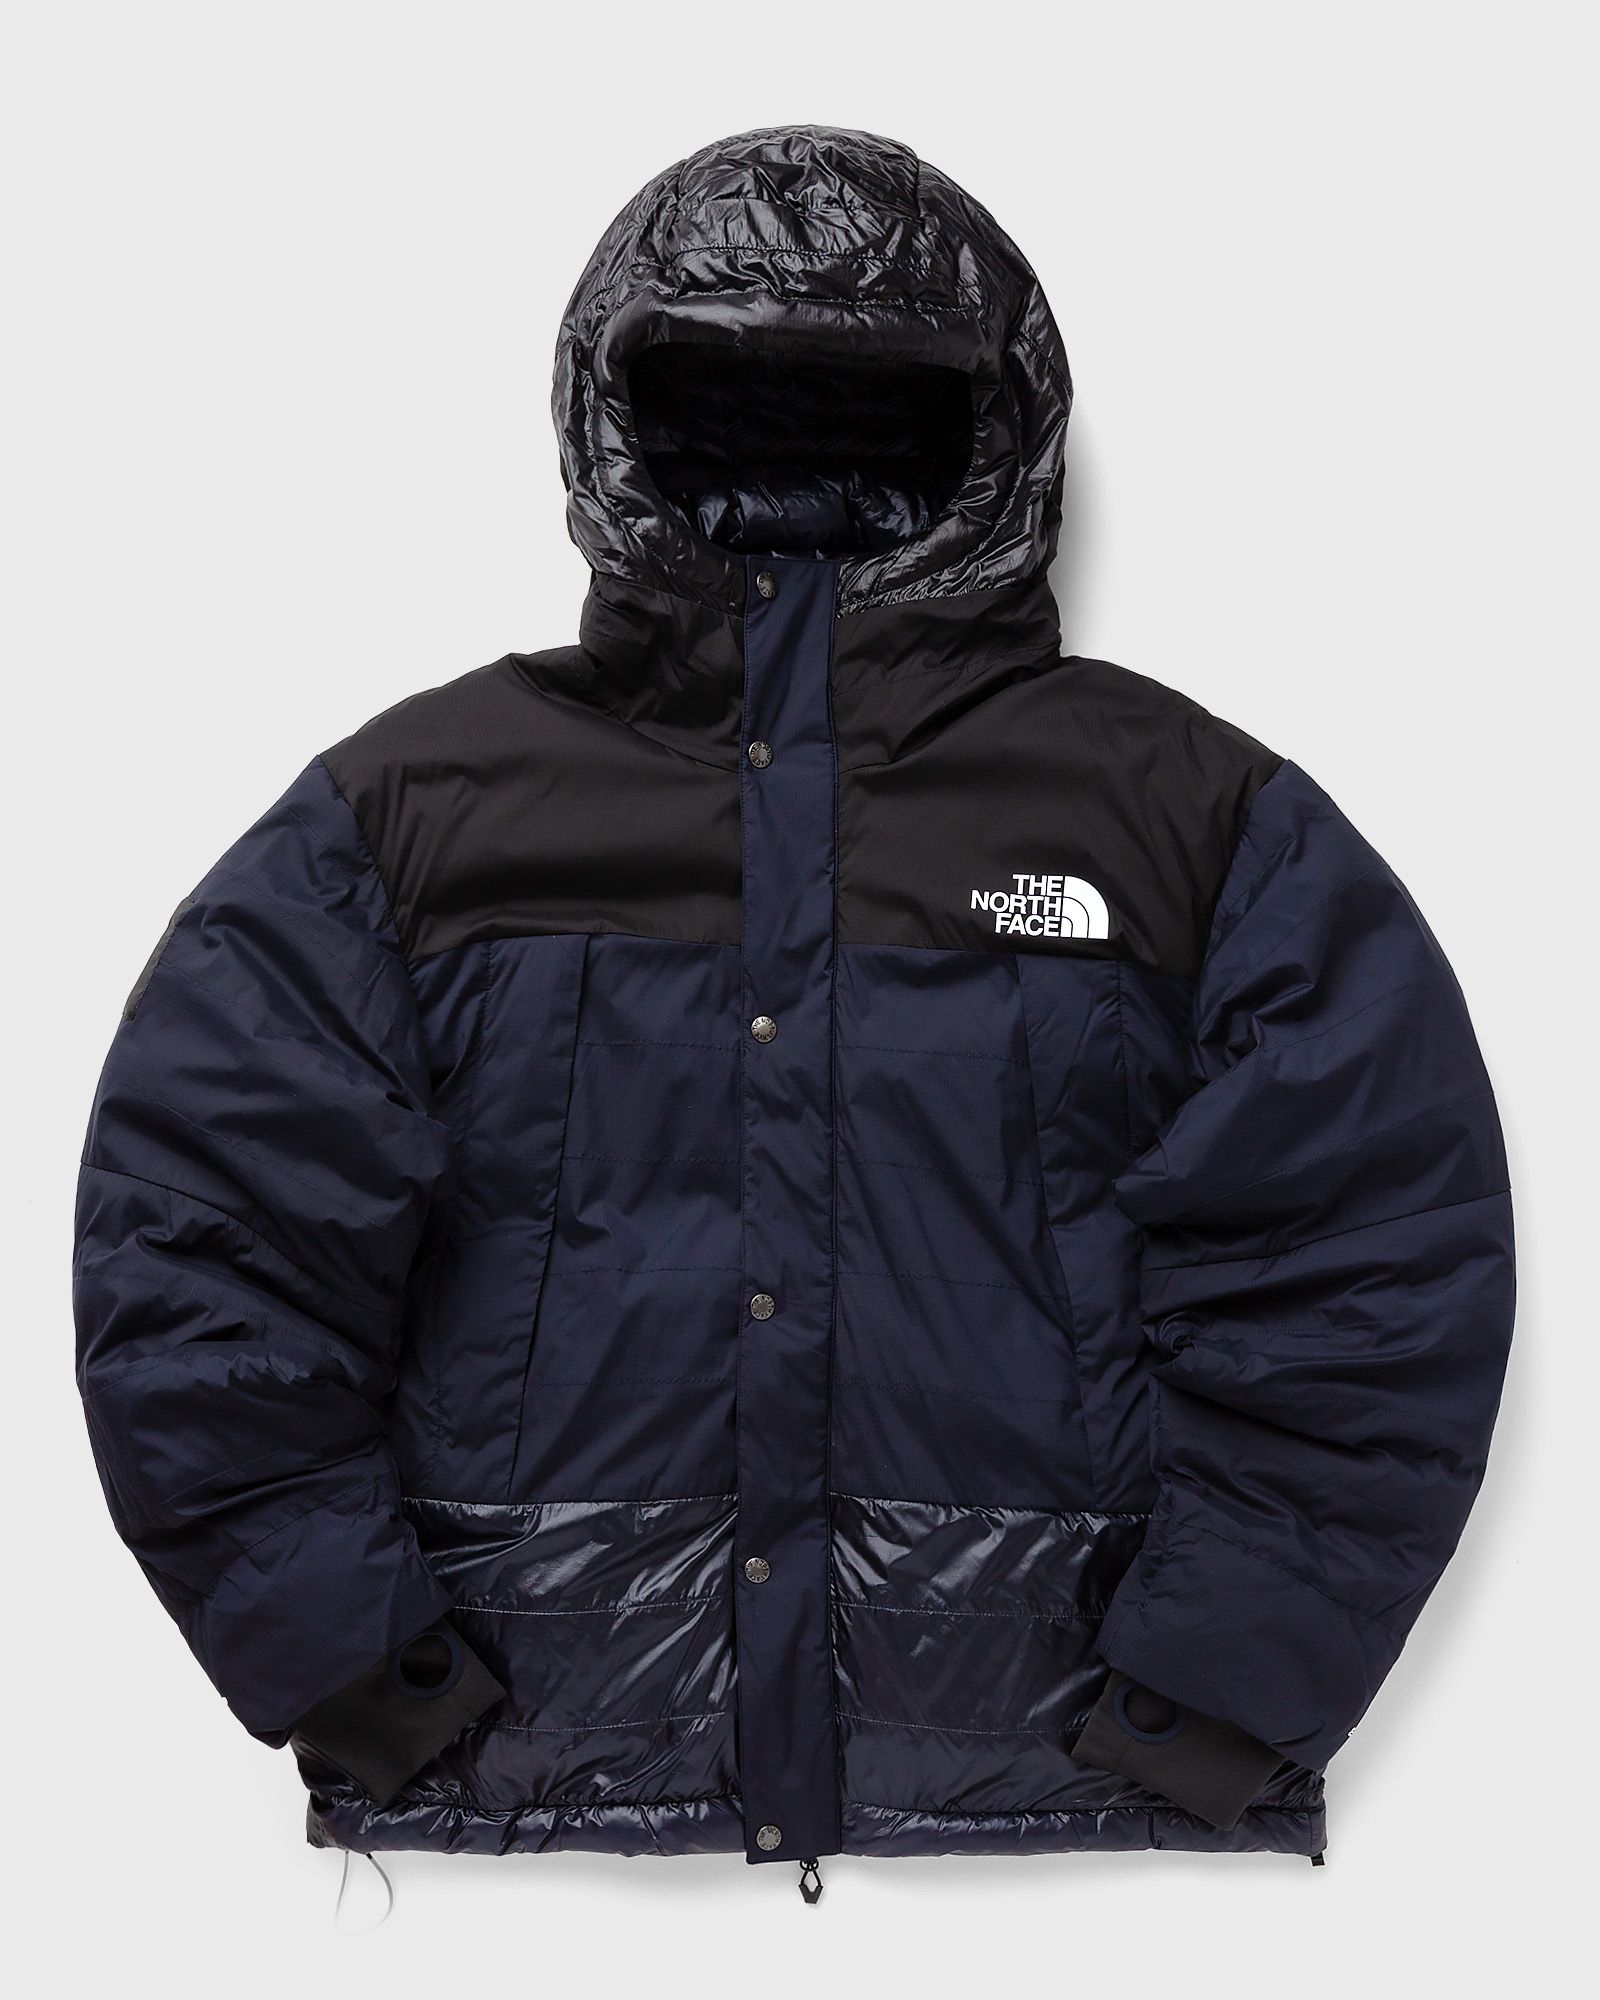 The North Face - x undercover 50/50 mountain jacket men windbreaker blue in größe:l